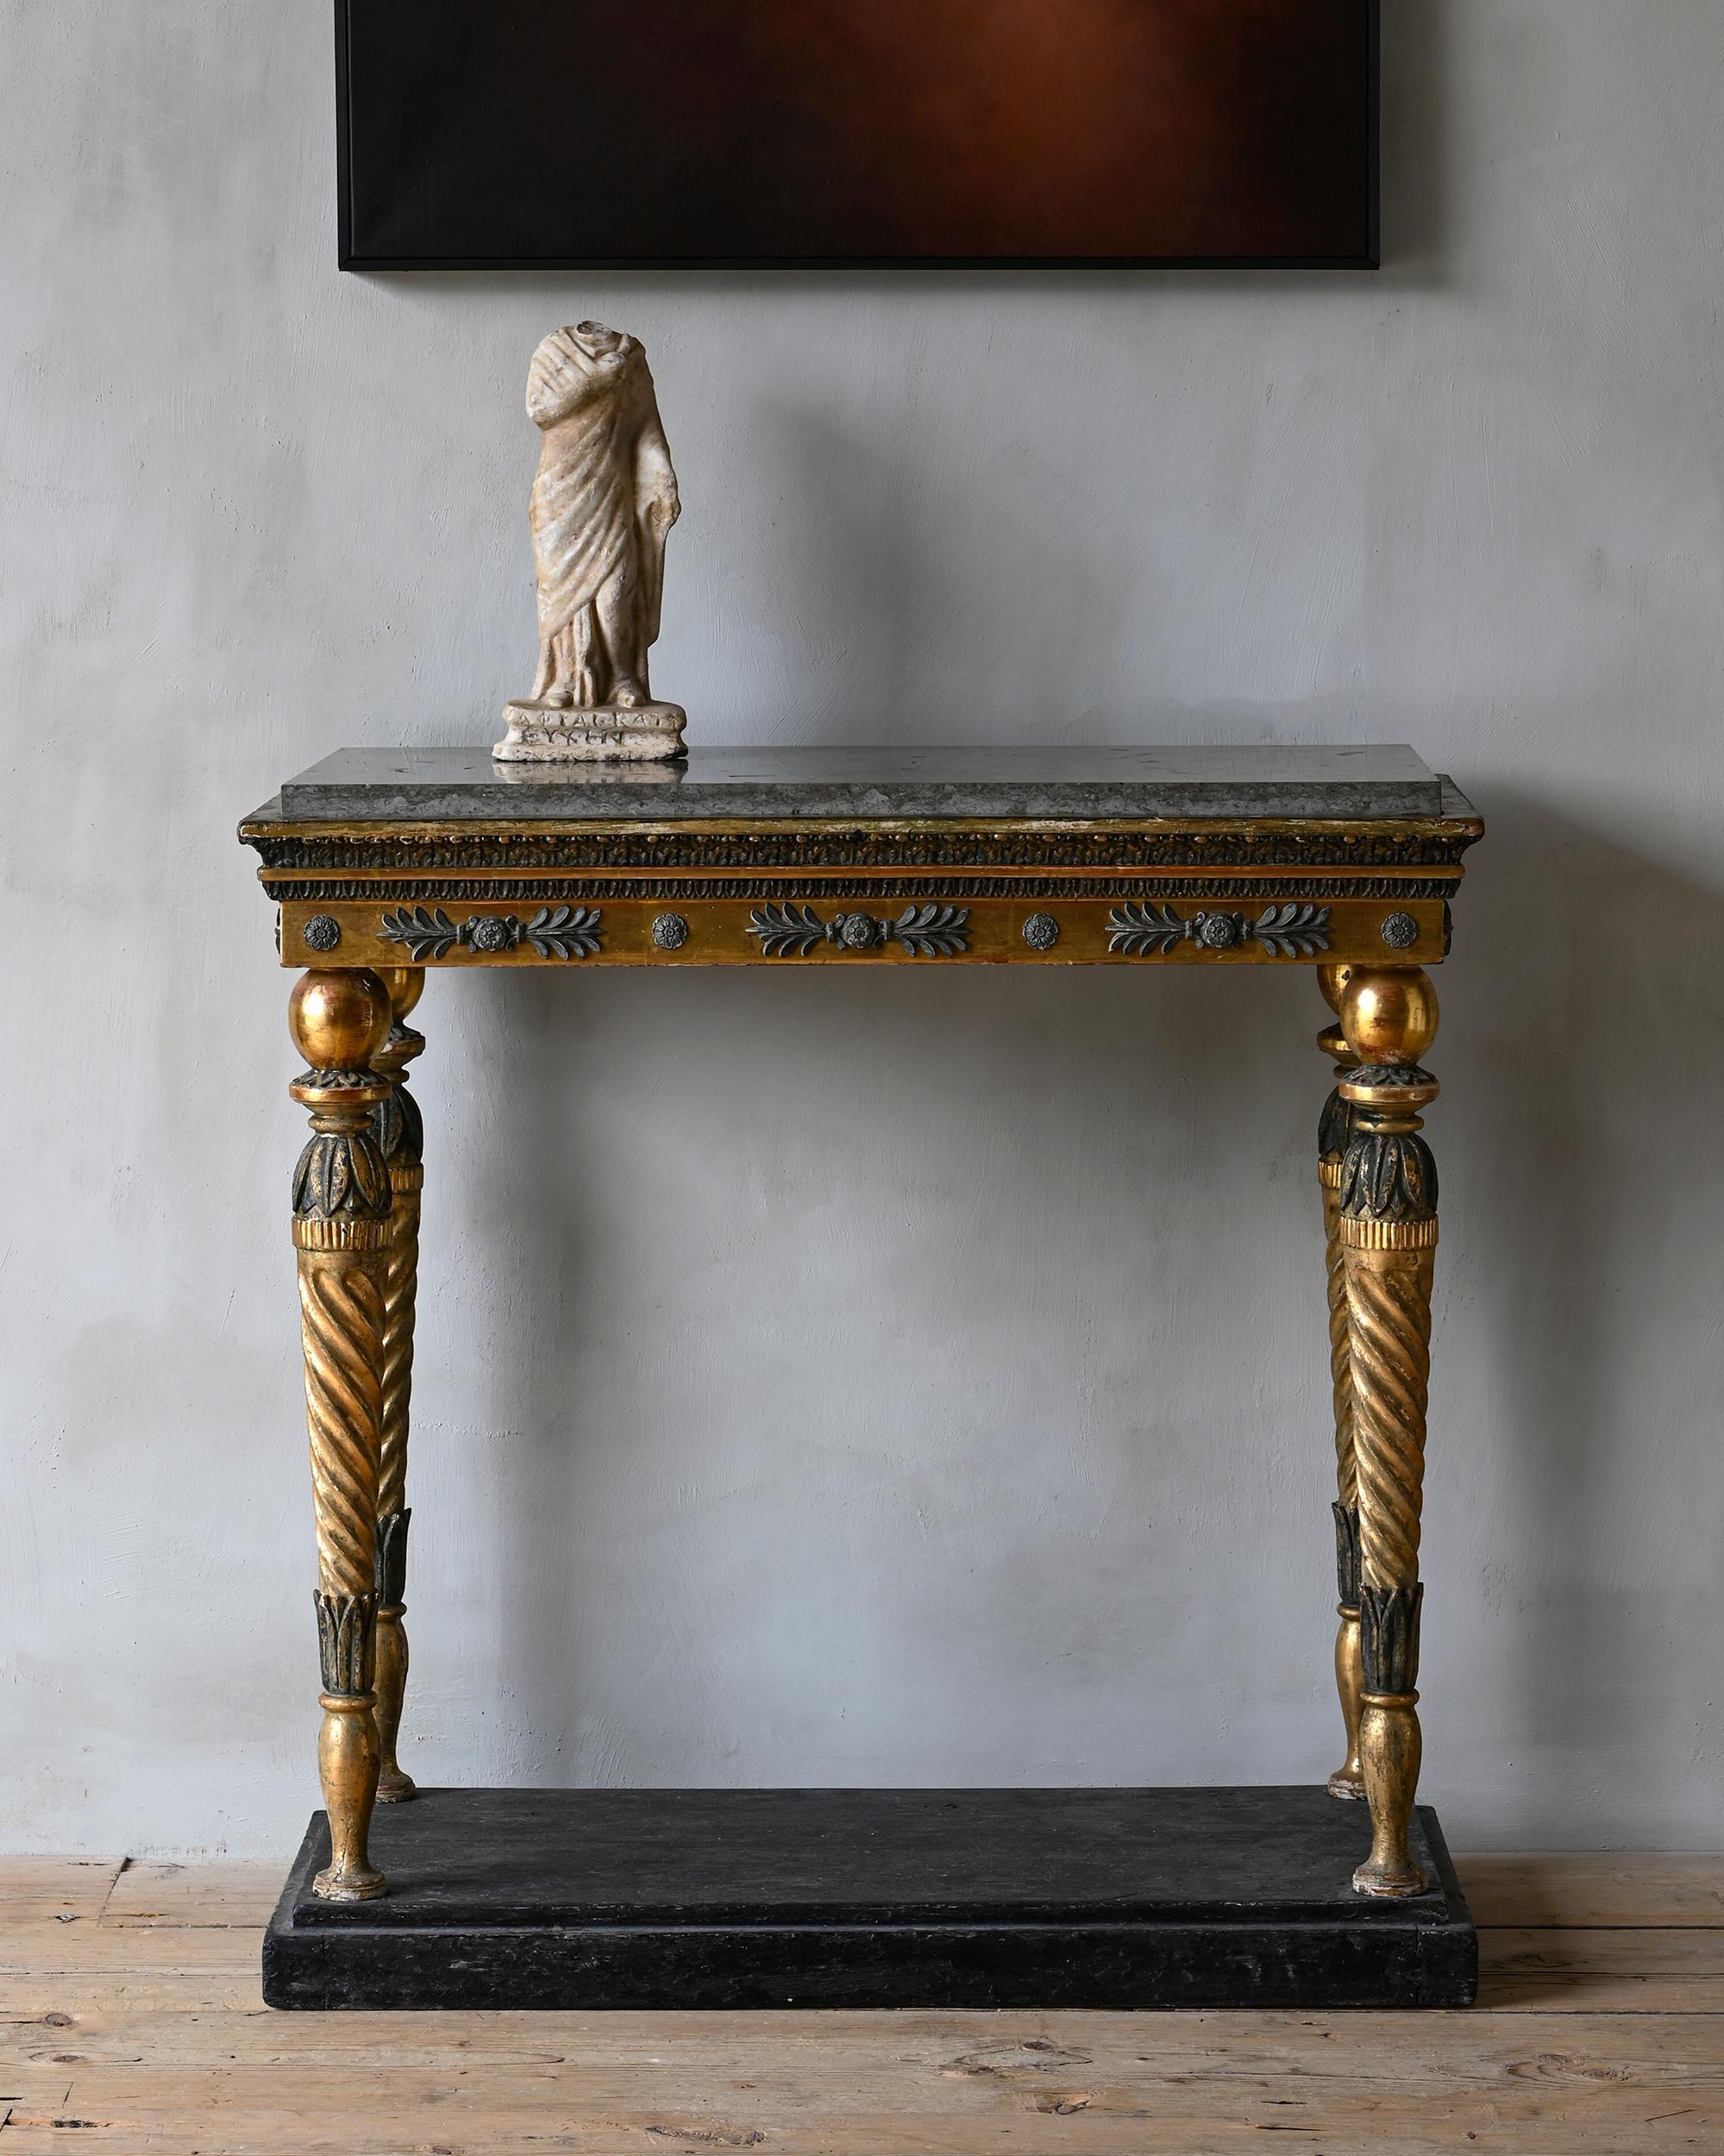 Fine console gustavienne du 19ème siècle en bois doré avec dessus en marbre. Ca 1810 Stockholm Suède.